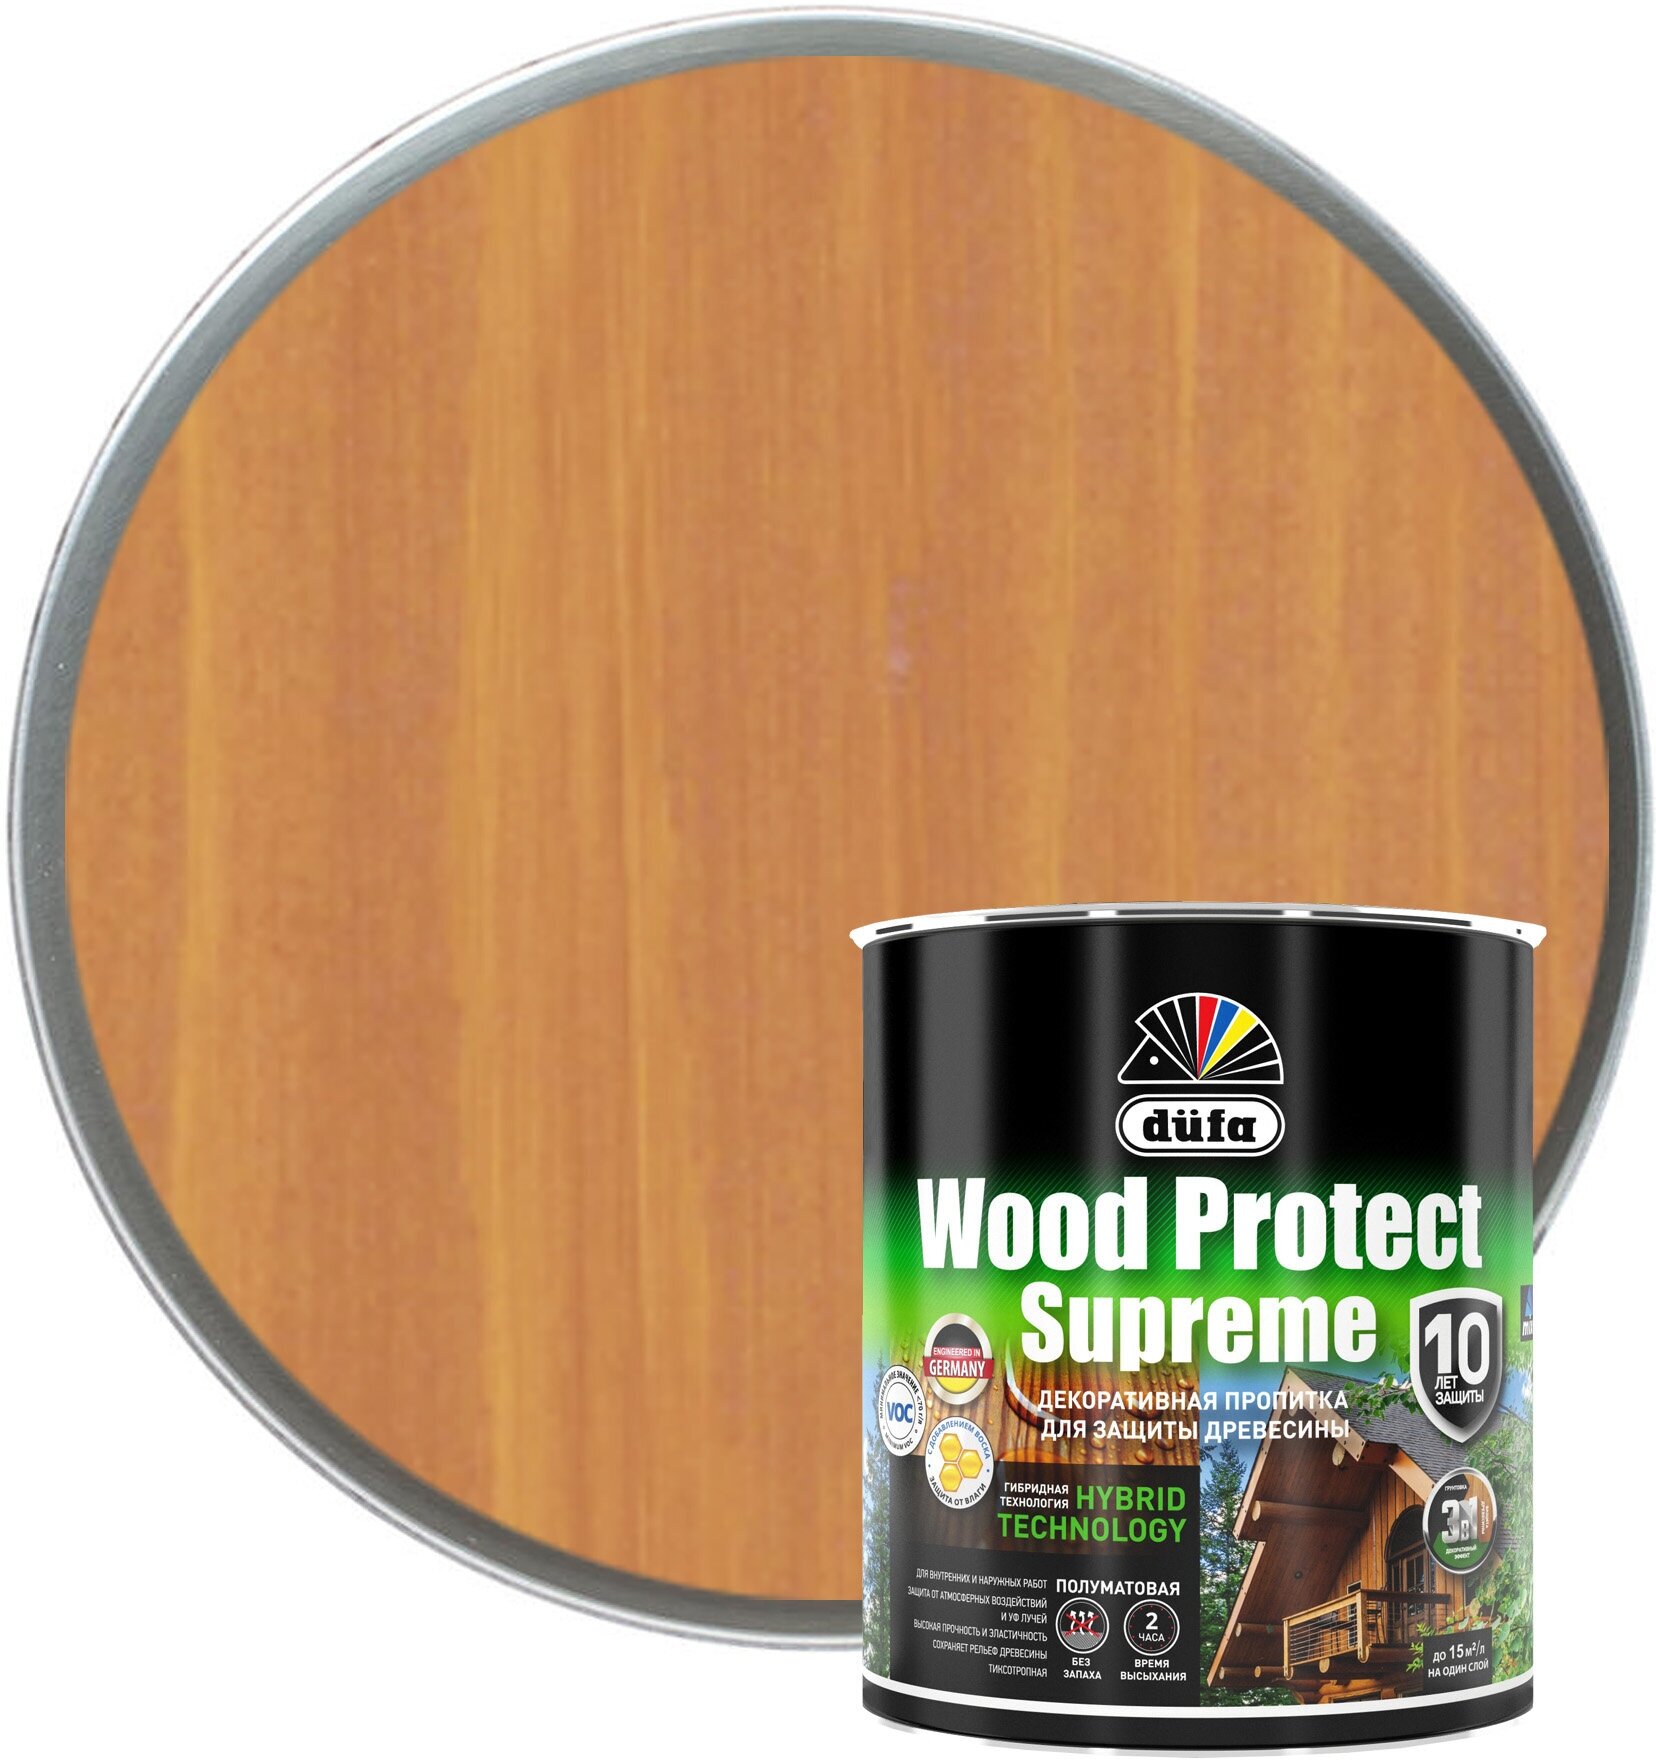 Деревозащитное средство DUFA Wood Protect Supreme